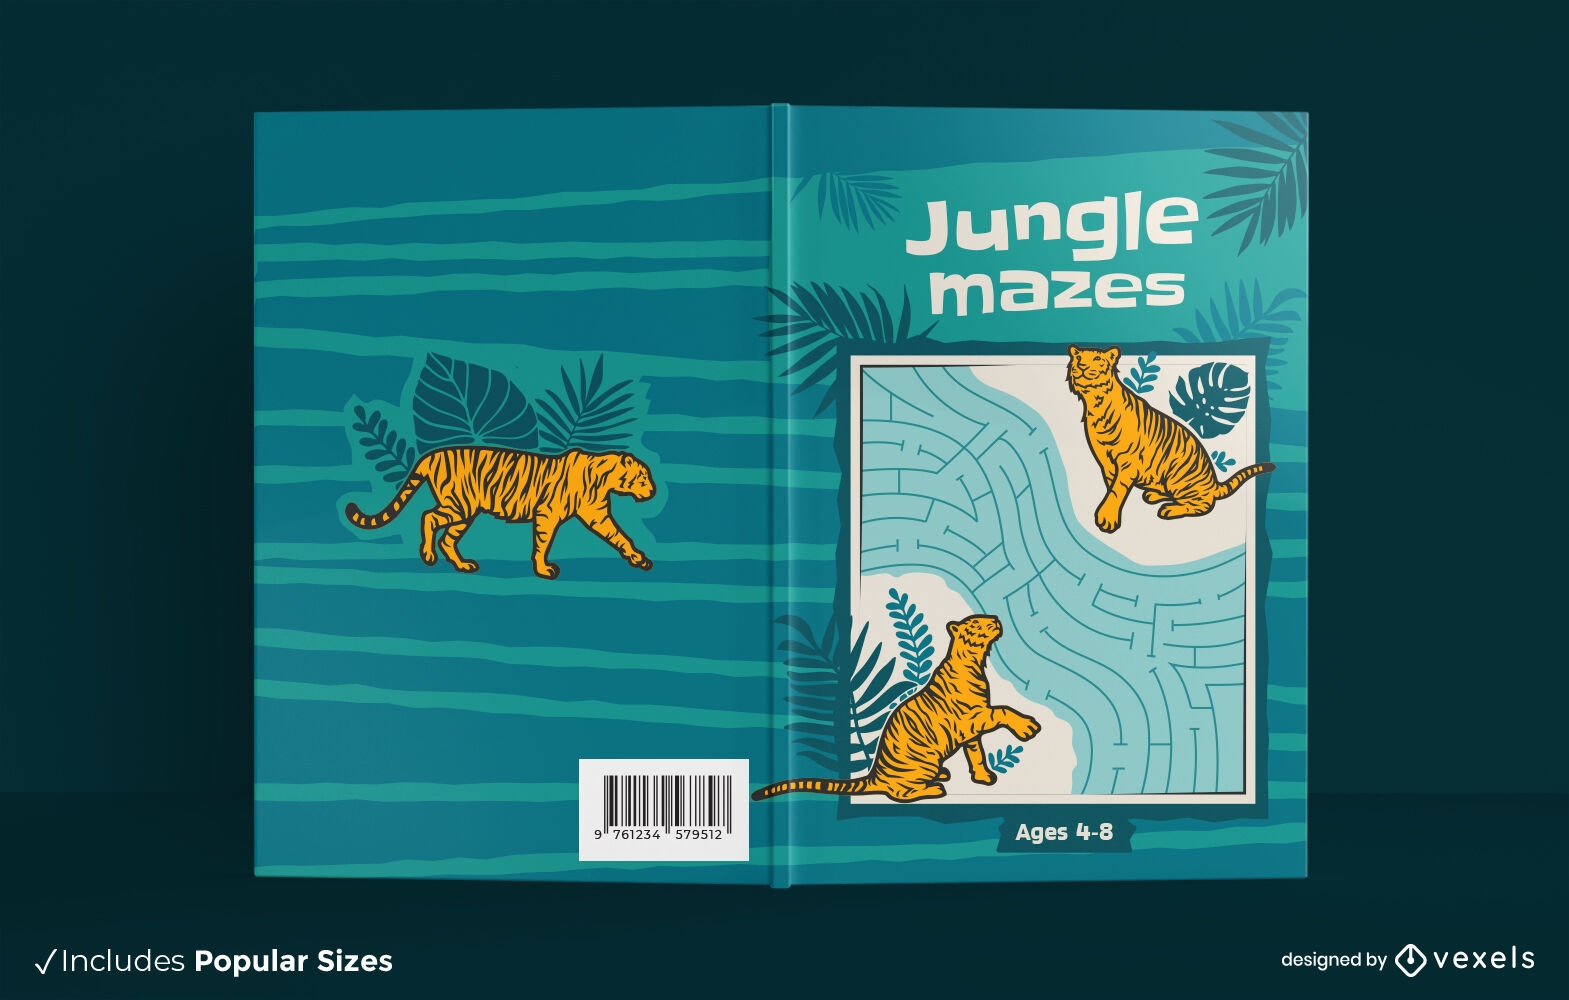 Jungle maze tiger book cover design